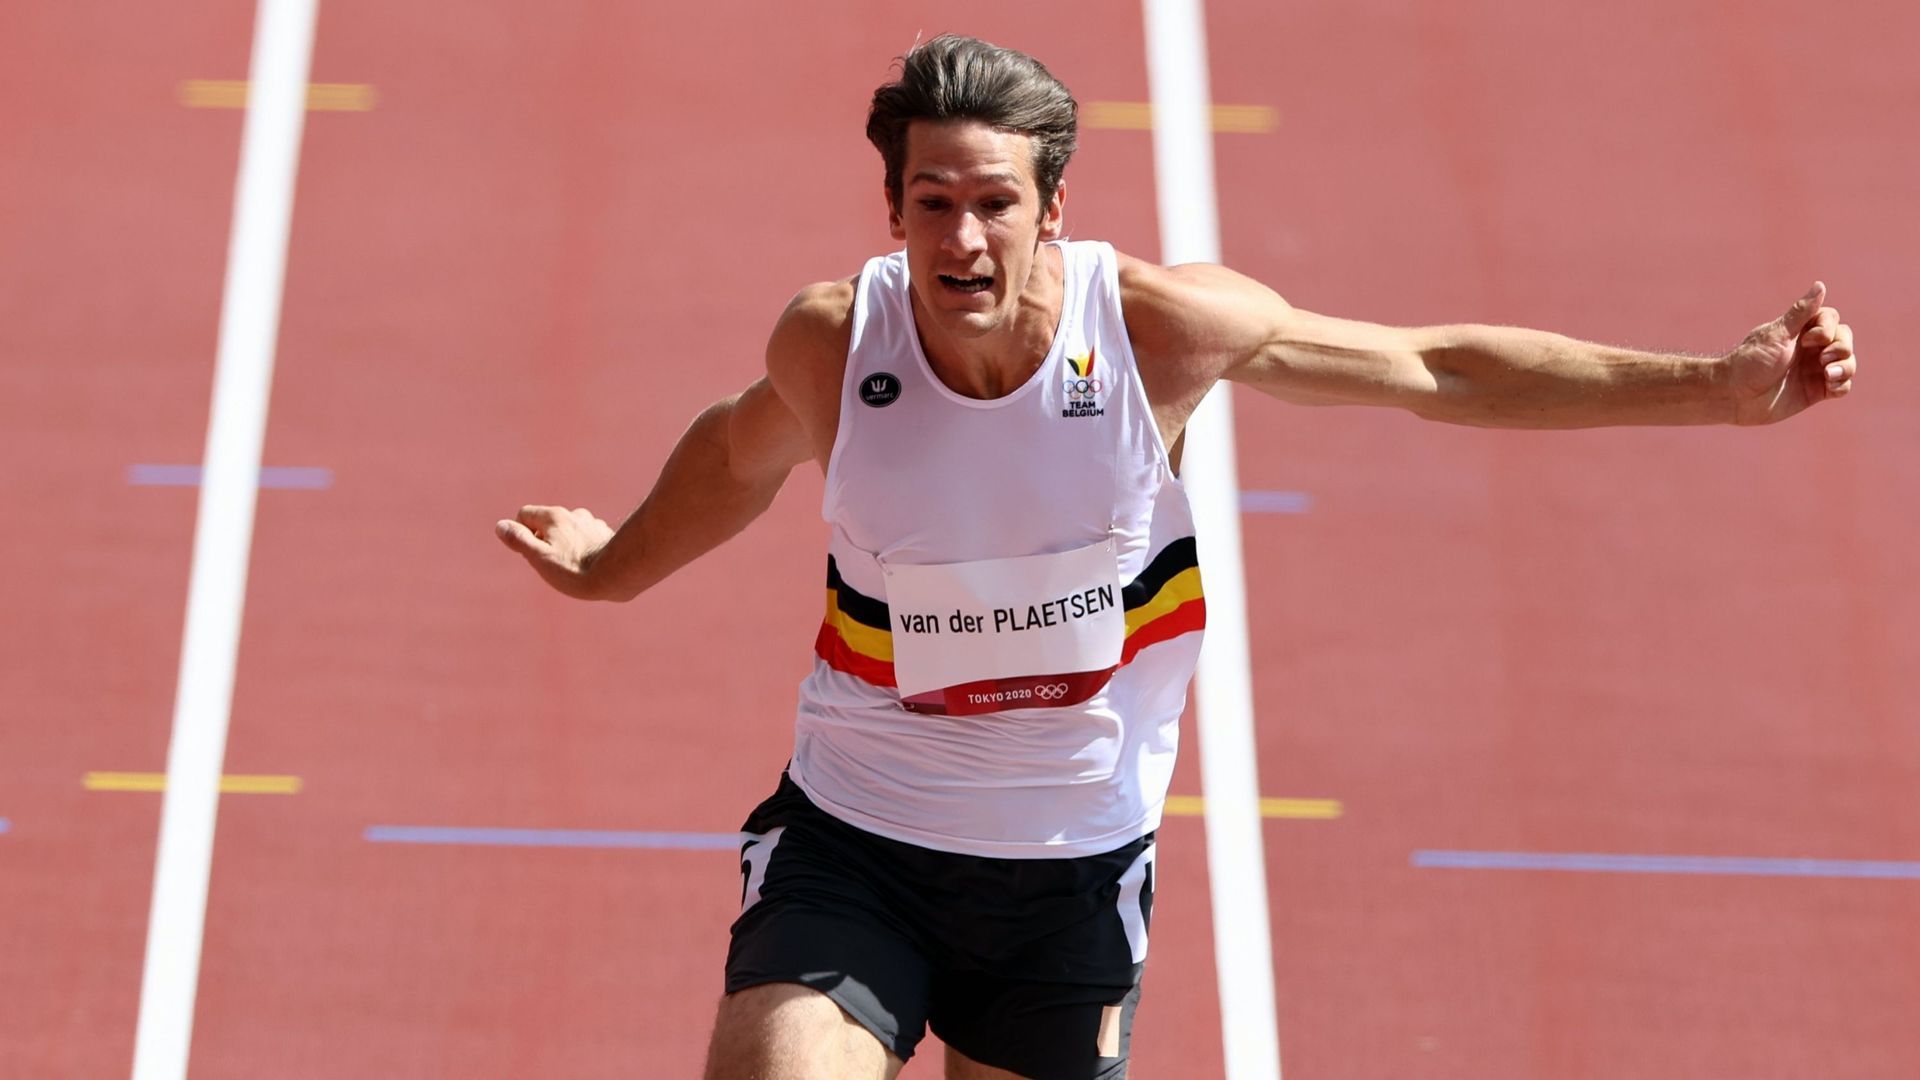 Thomas Van der Plaetsen a vu son décathlon s’arrêter suite à un claquage dans l’épreuve de la longueur, 2e du concours du décathlon.